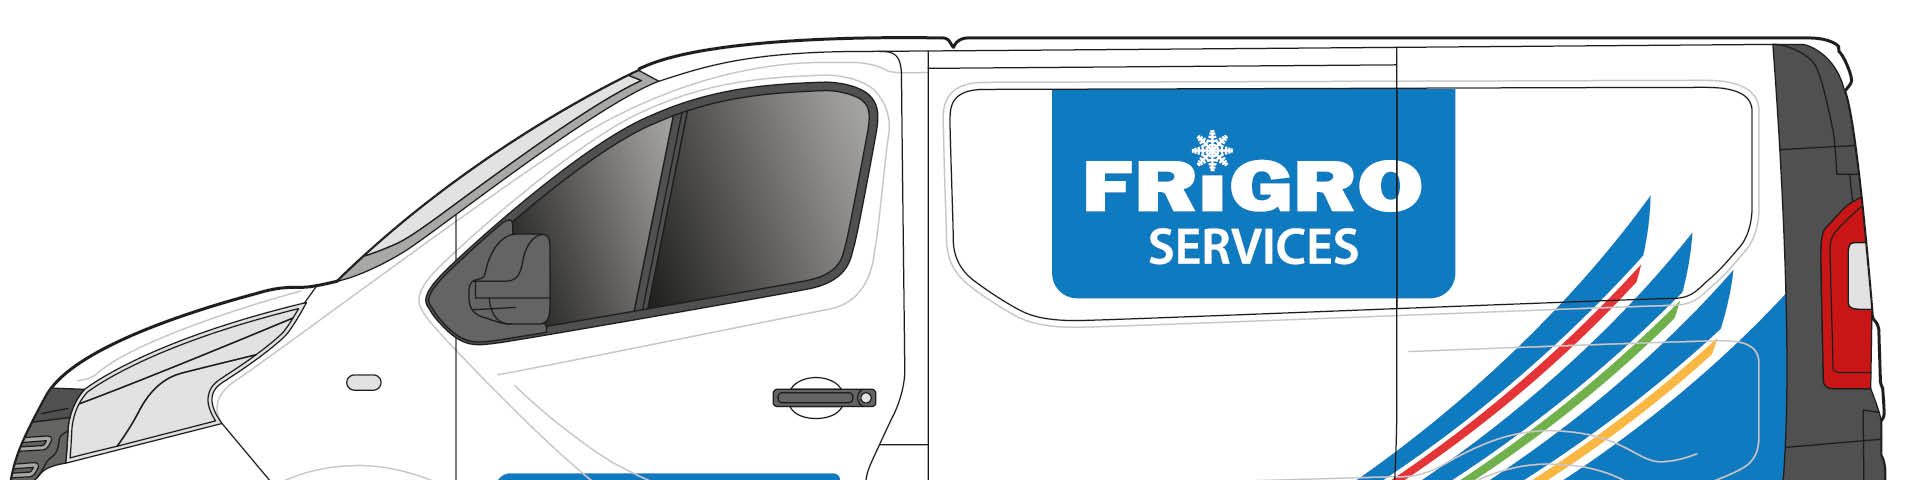 Frigro Services bestelwagen